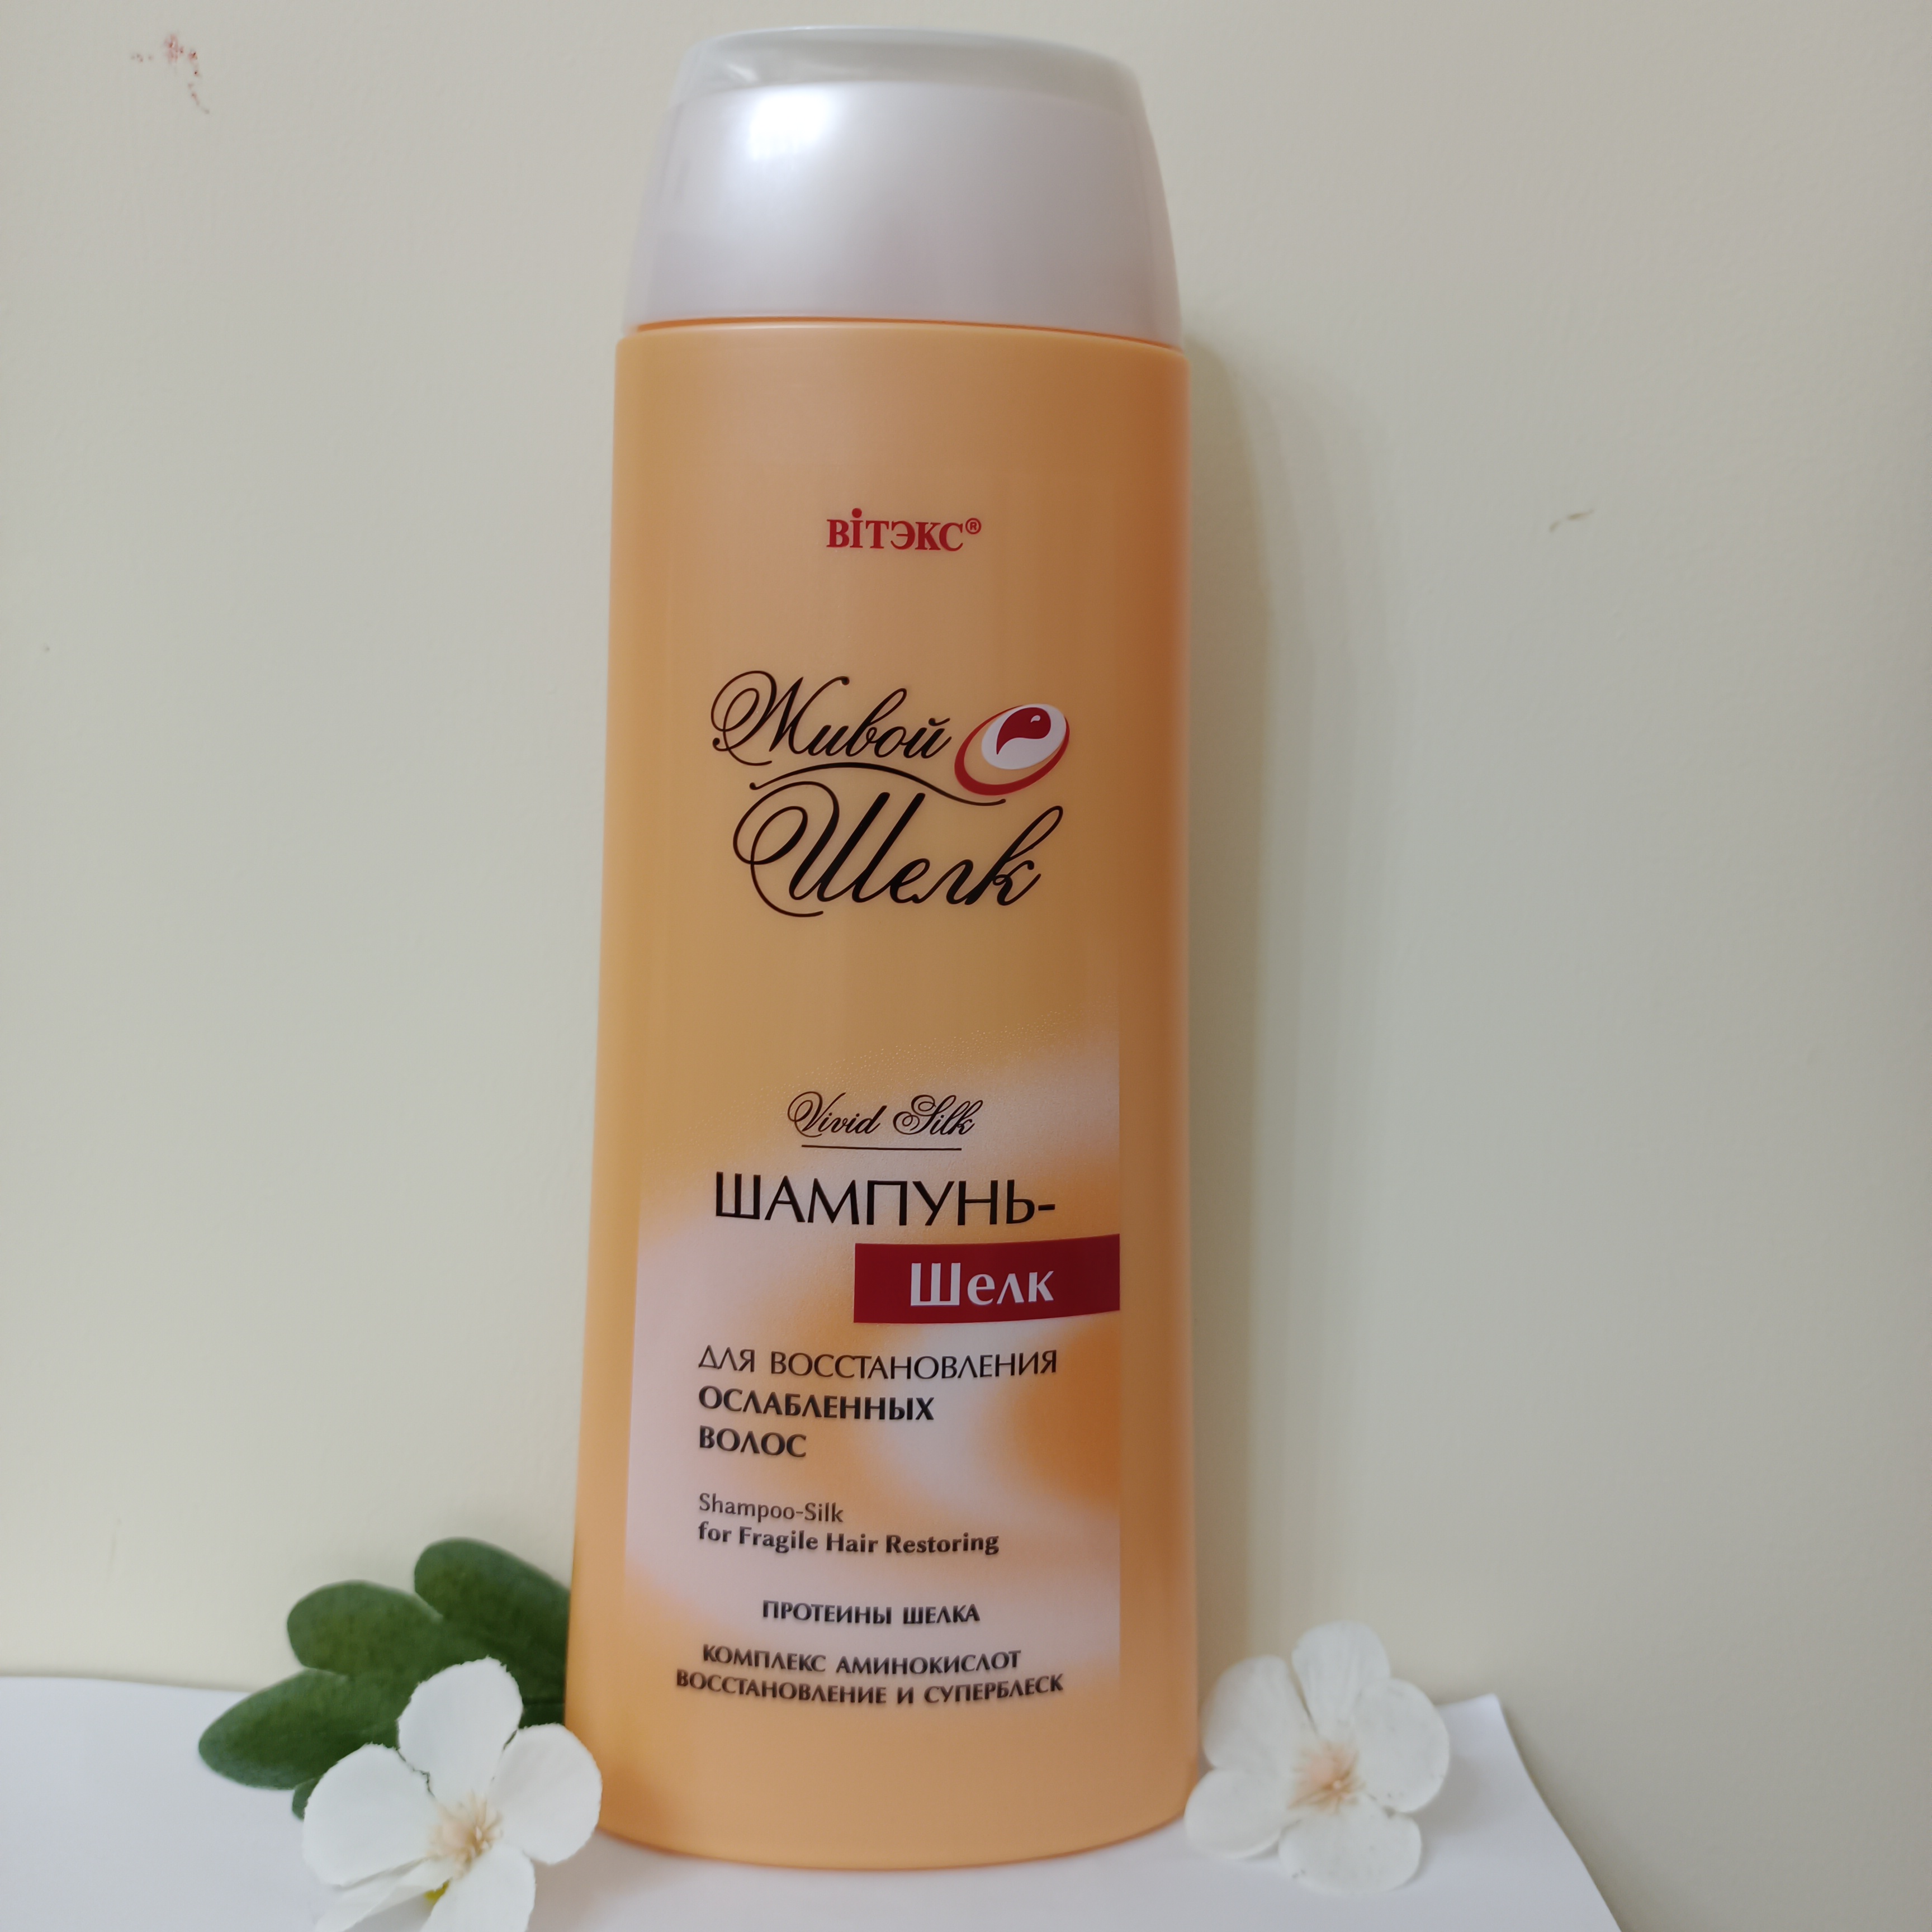 Shampoo - silk to restore weakened hair 500 ml